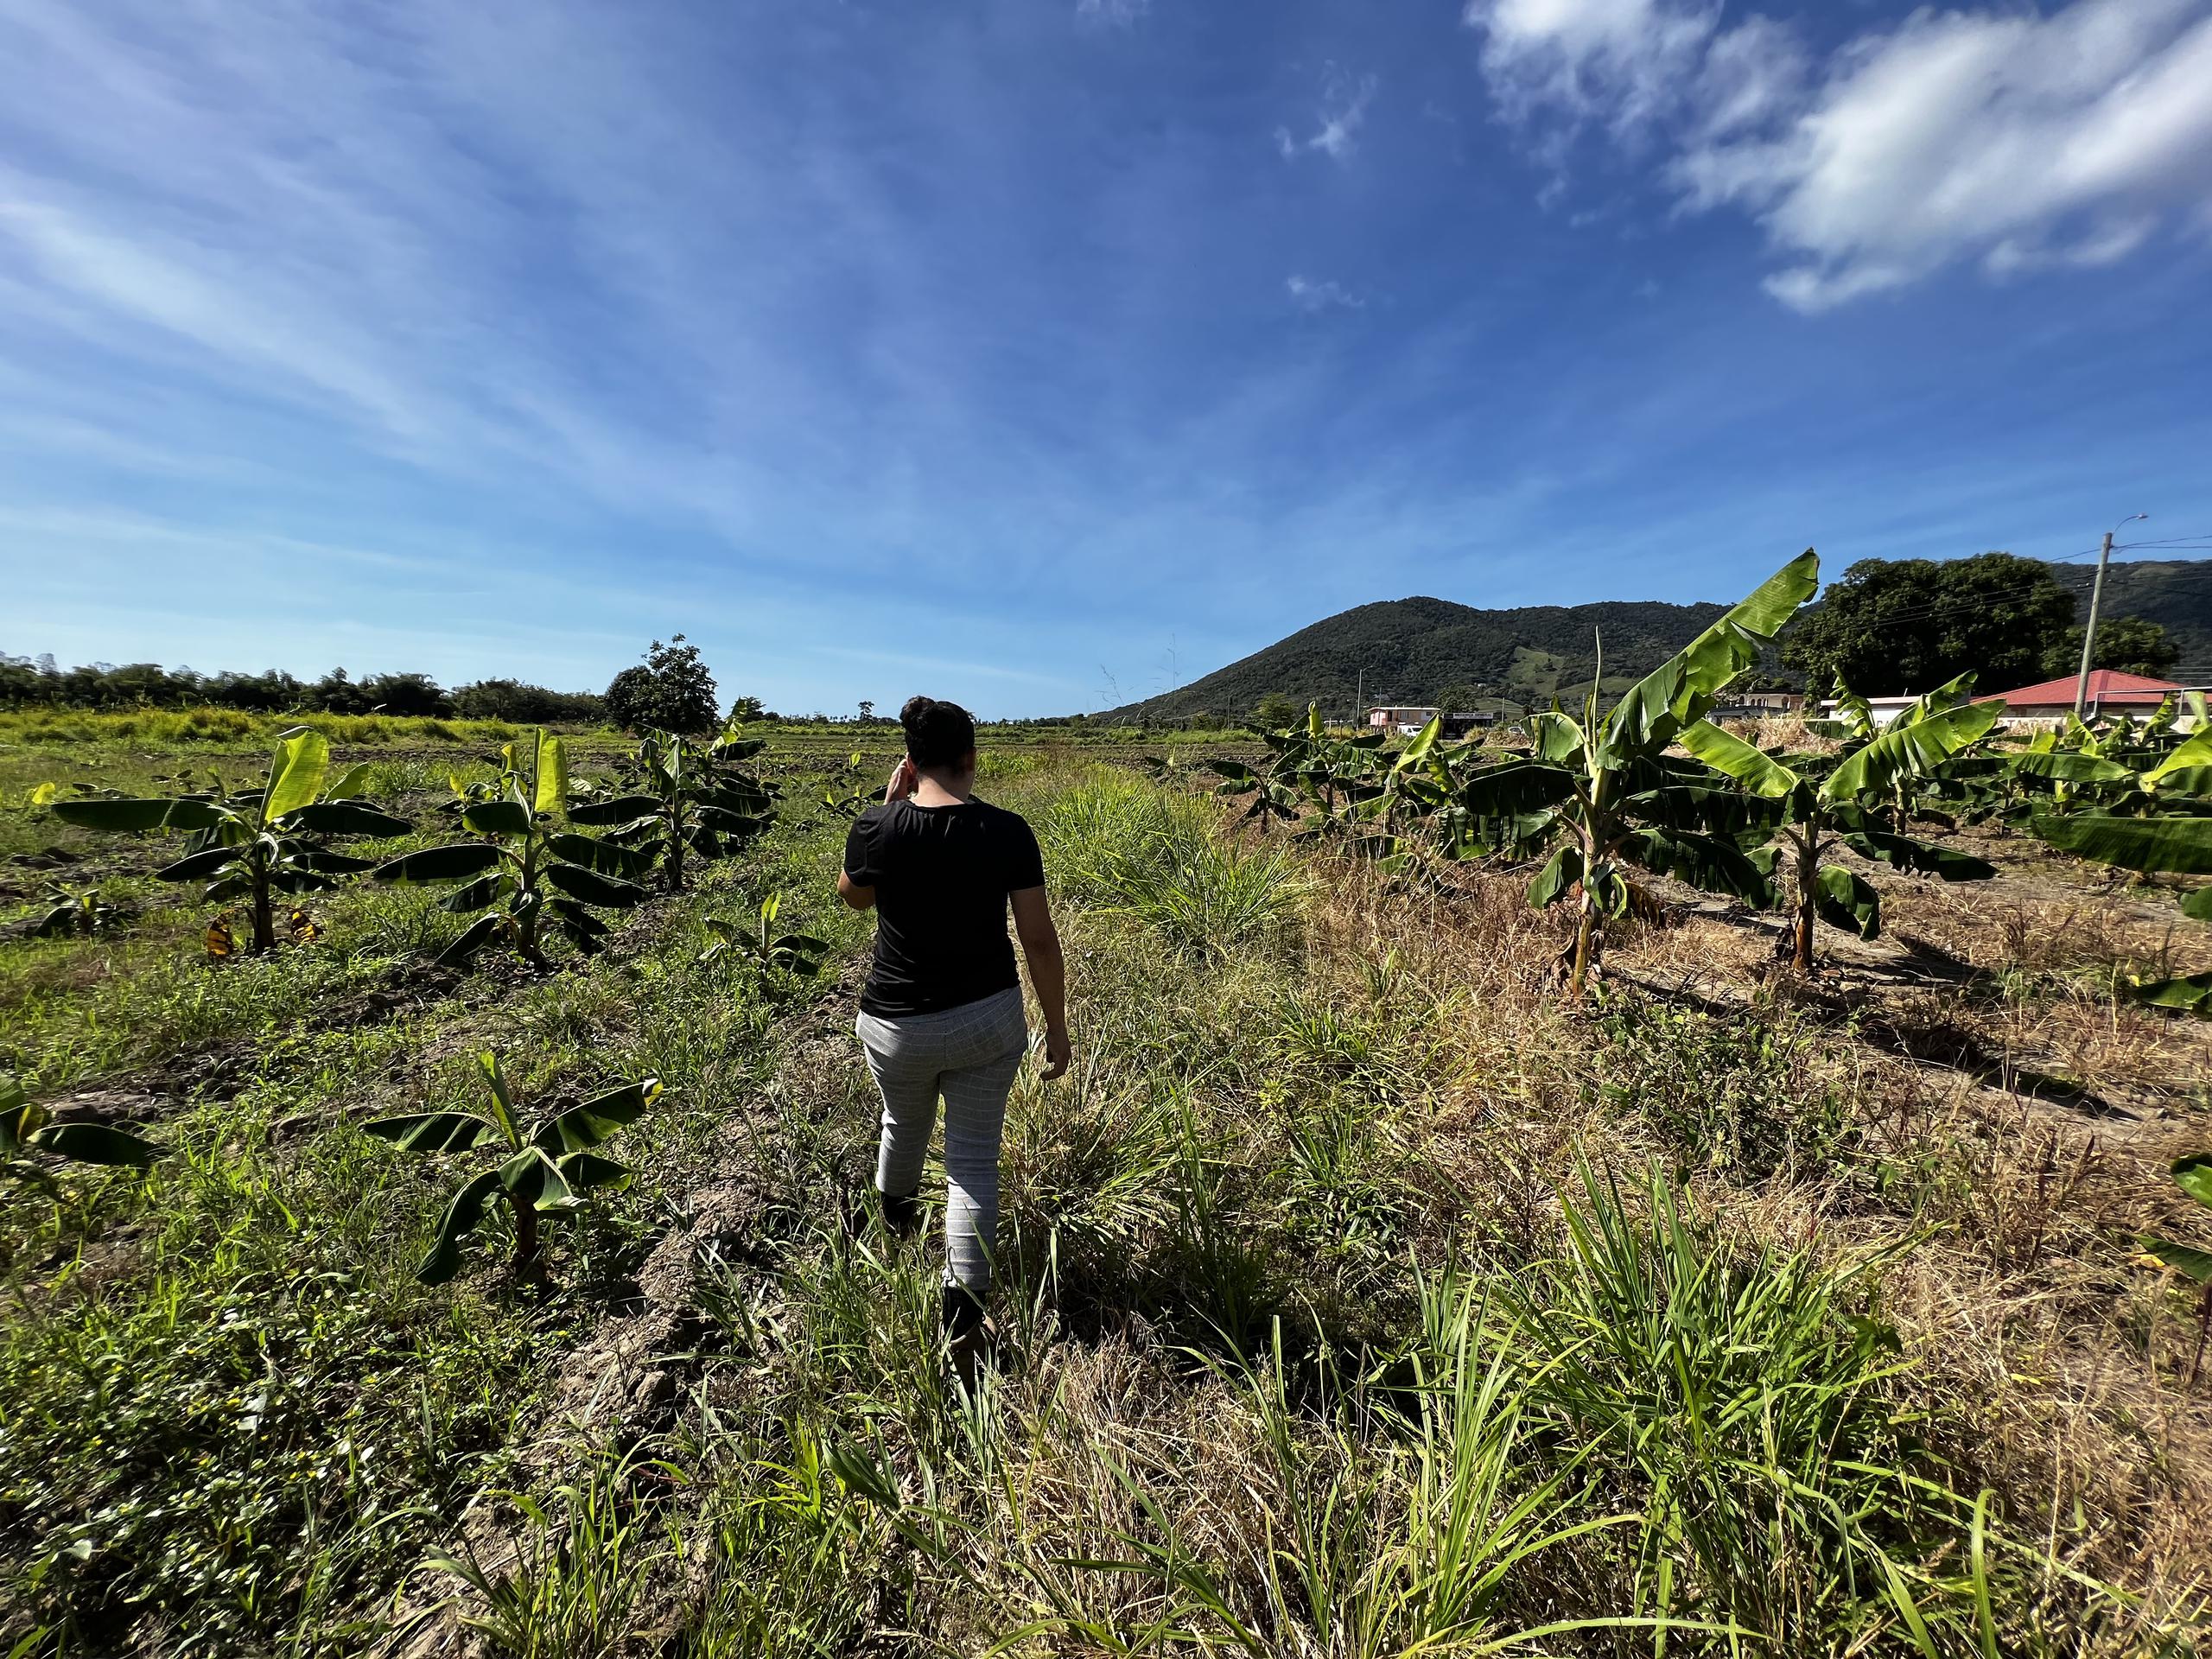 Al mirar al horizonte, Nitzi no solo ve un futuro prometedor para las agriculturas, sino para la industria agrícola local, en general.